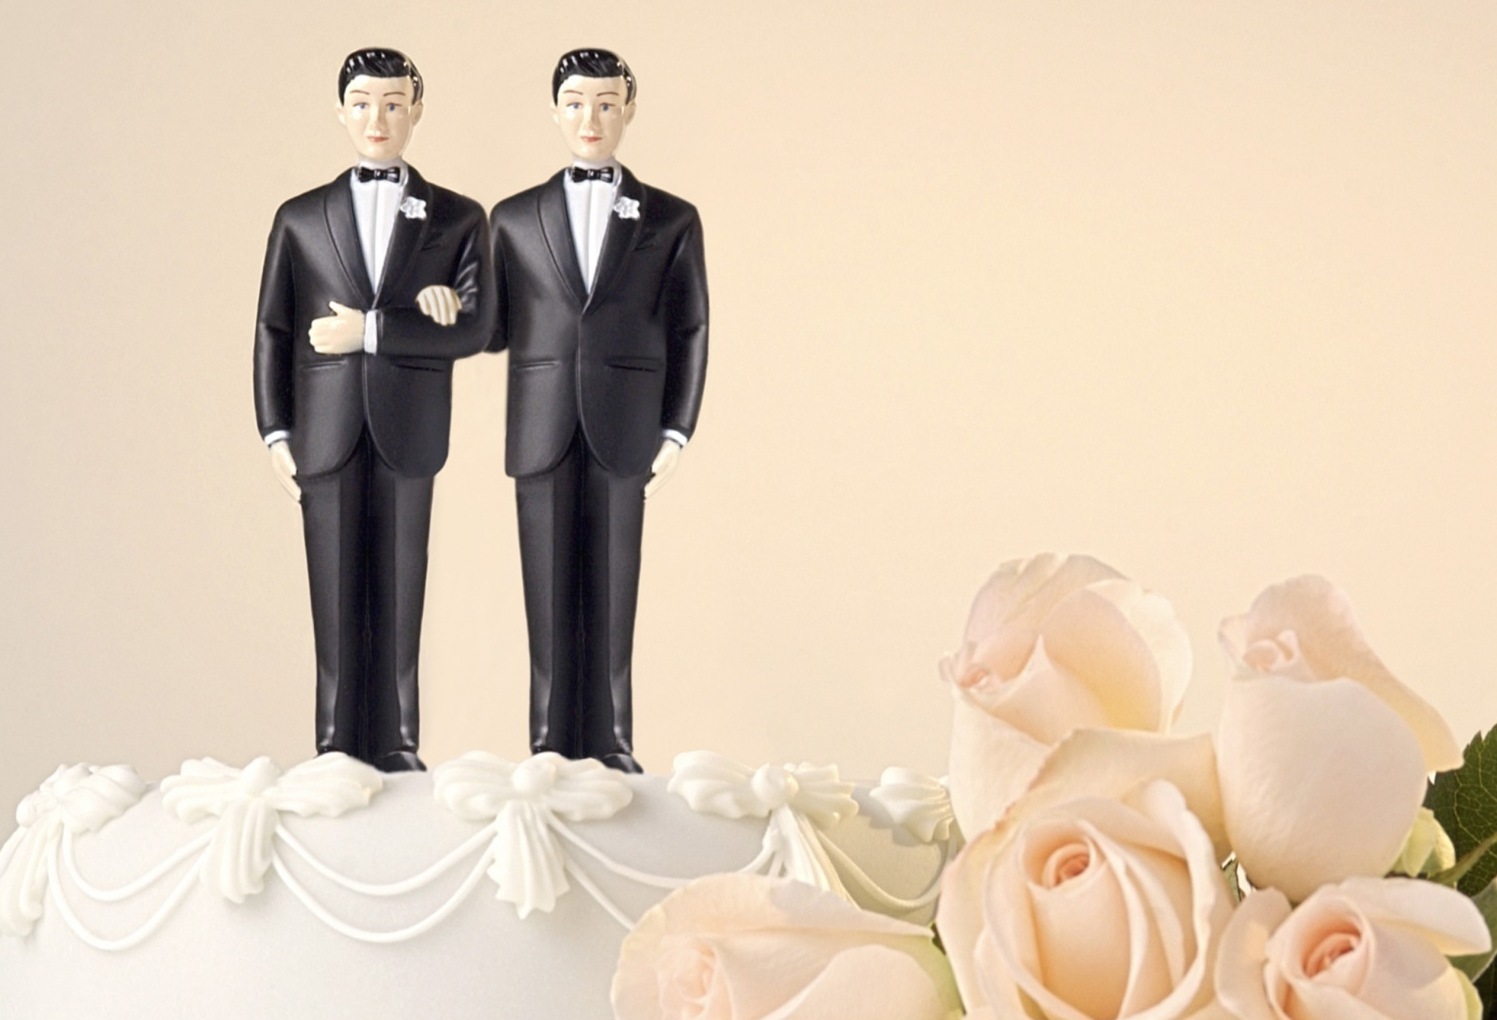 Matrimonio gay: anche per la Corte d’Appello di Firenze non si può registrare 1